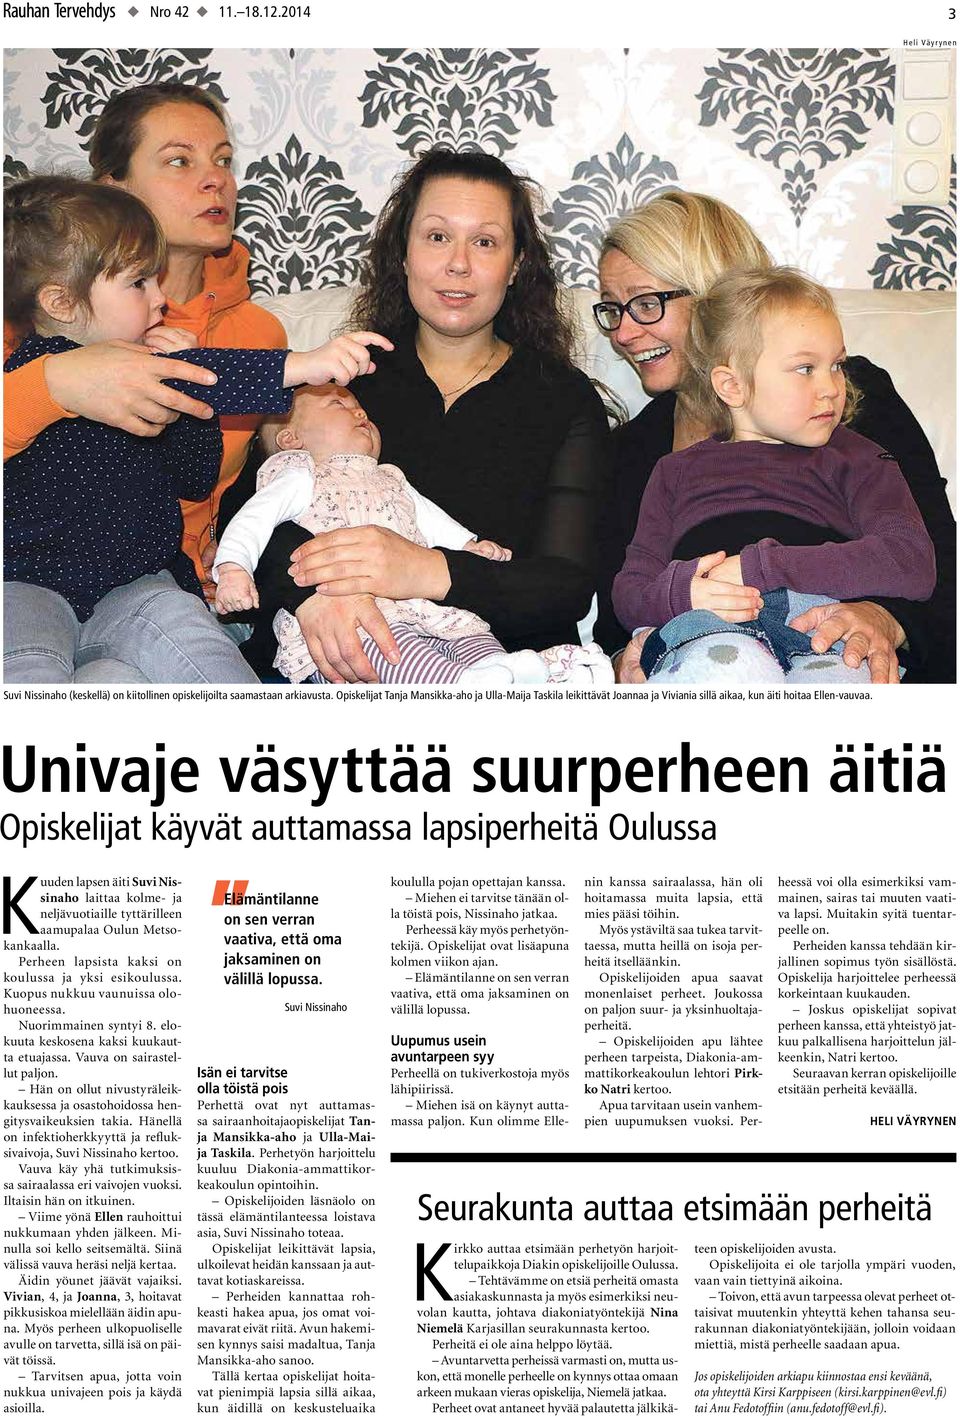 Univaje väsyttää suurperheen äitiä Opiskelijat käyvät auttamassa lapsiperheitä Oulussa Kuuden lapsen äiti Suvi Nissinaho laittaa kolme- ja neljävuotiaille tyttärilleen aamupalaa Oulun Metsokankaalla.